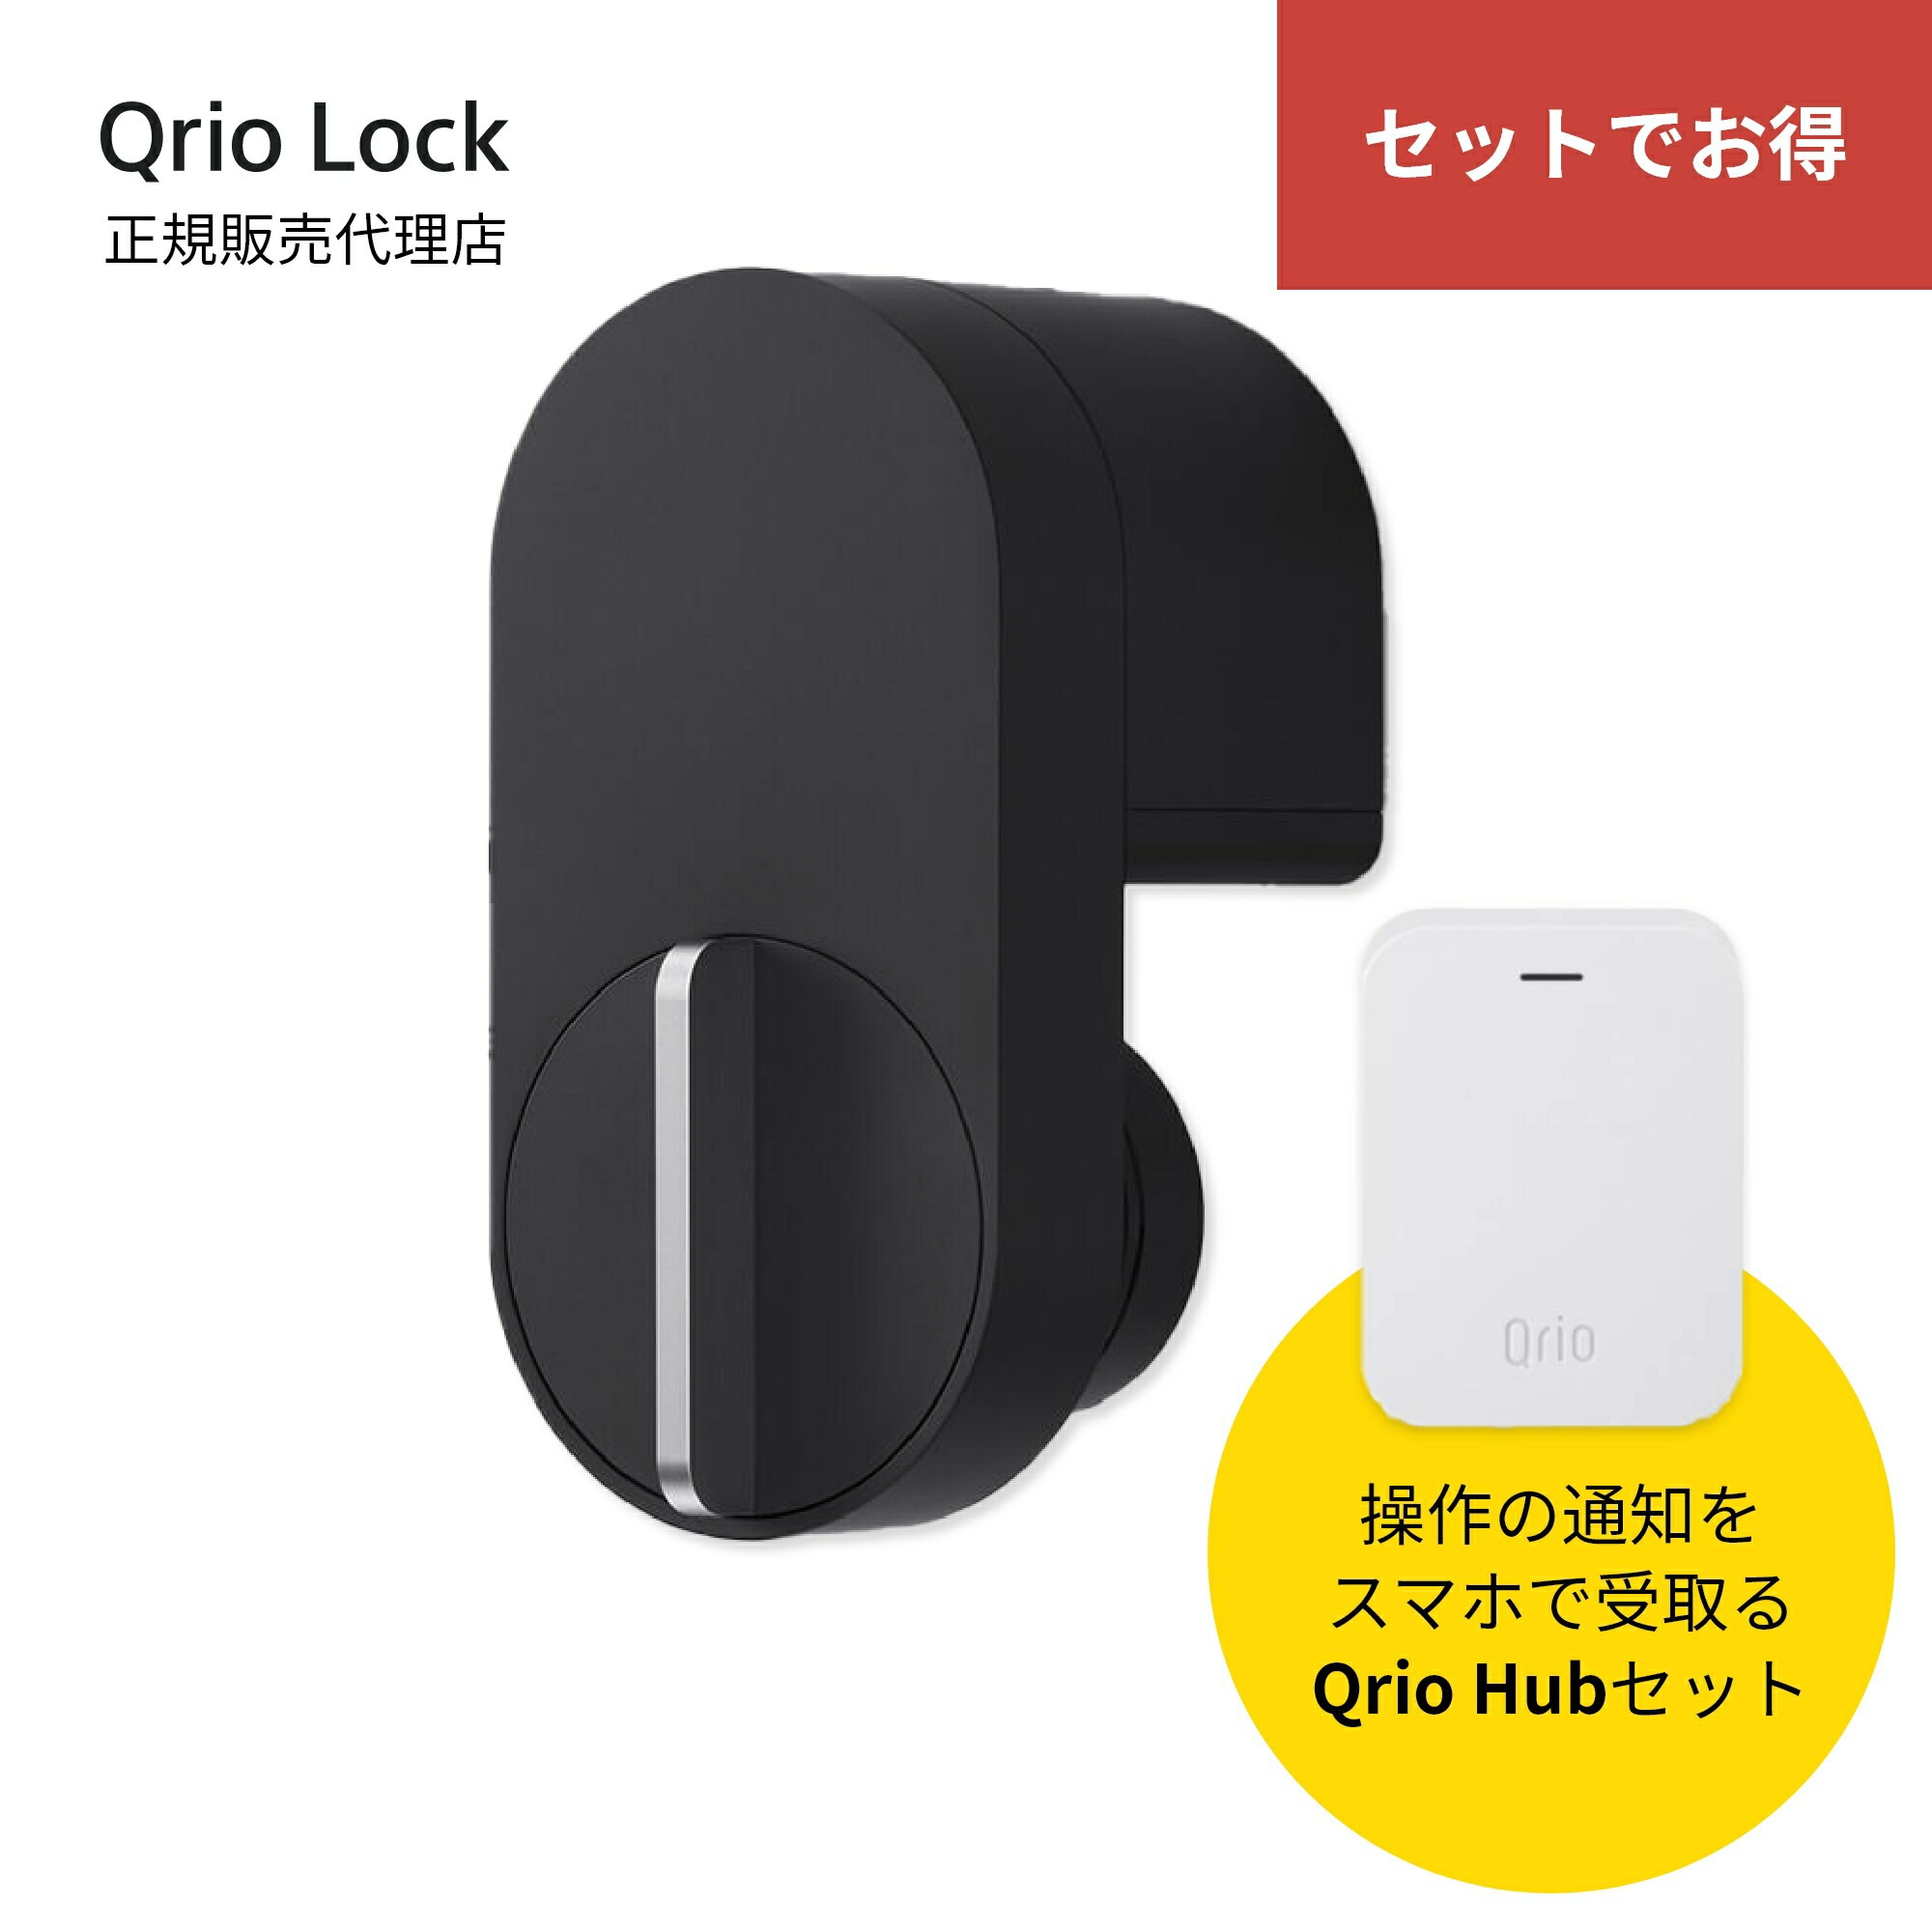 アウトレットの半額 Qrio Lock Q-SL2 その他